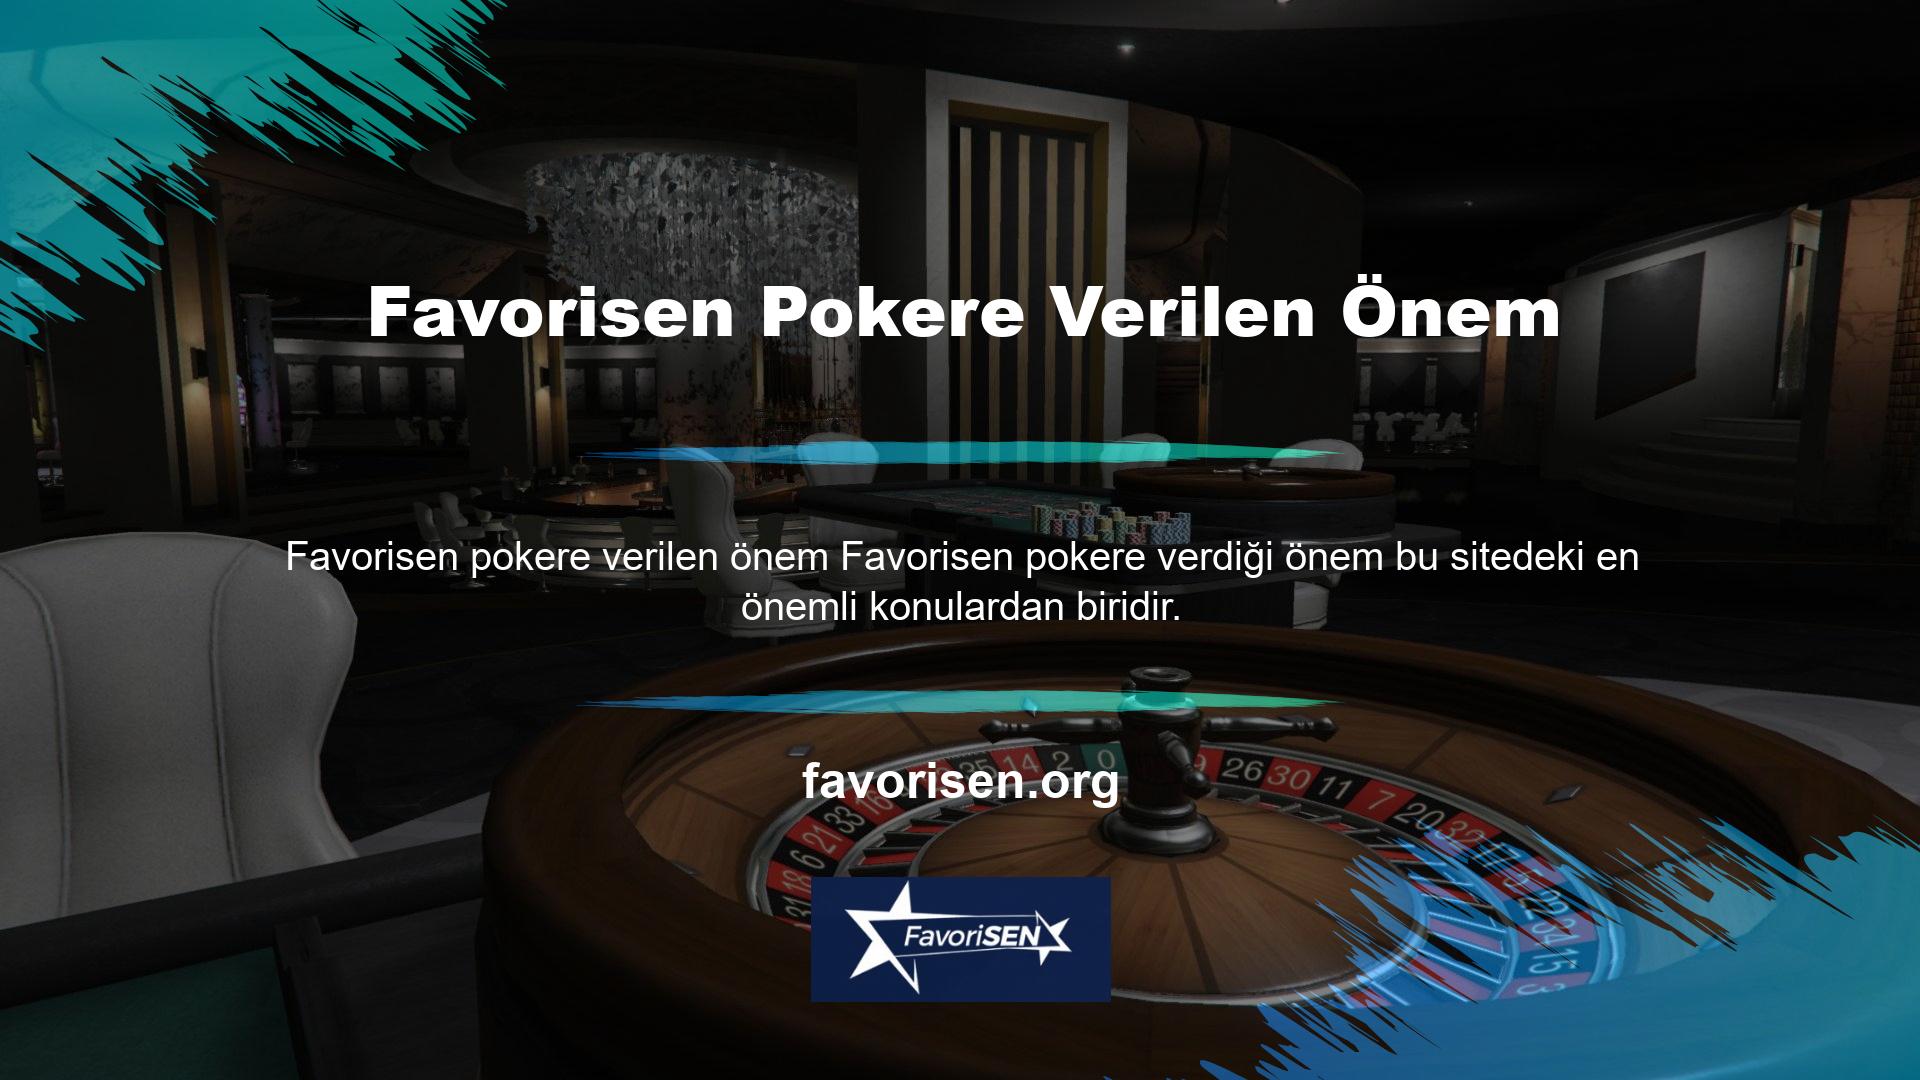 Canlı Casino Oyunları seçeneğinde poker oyunları mevcuttur